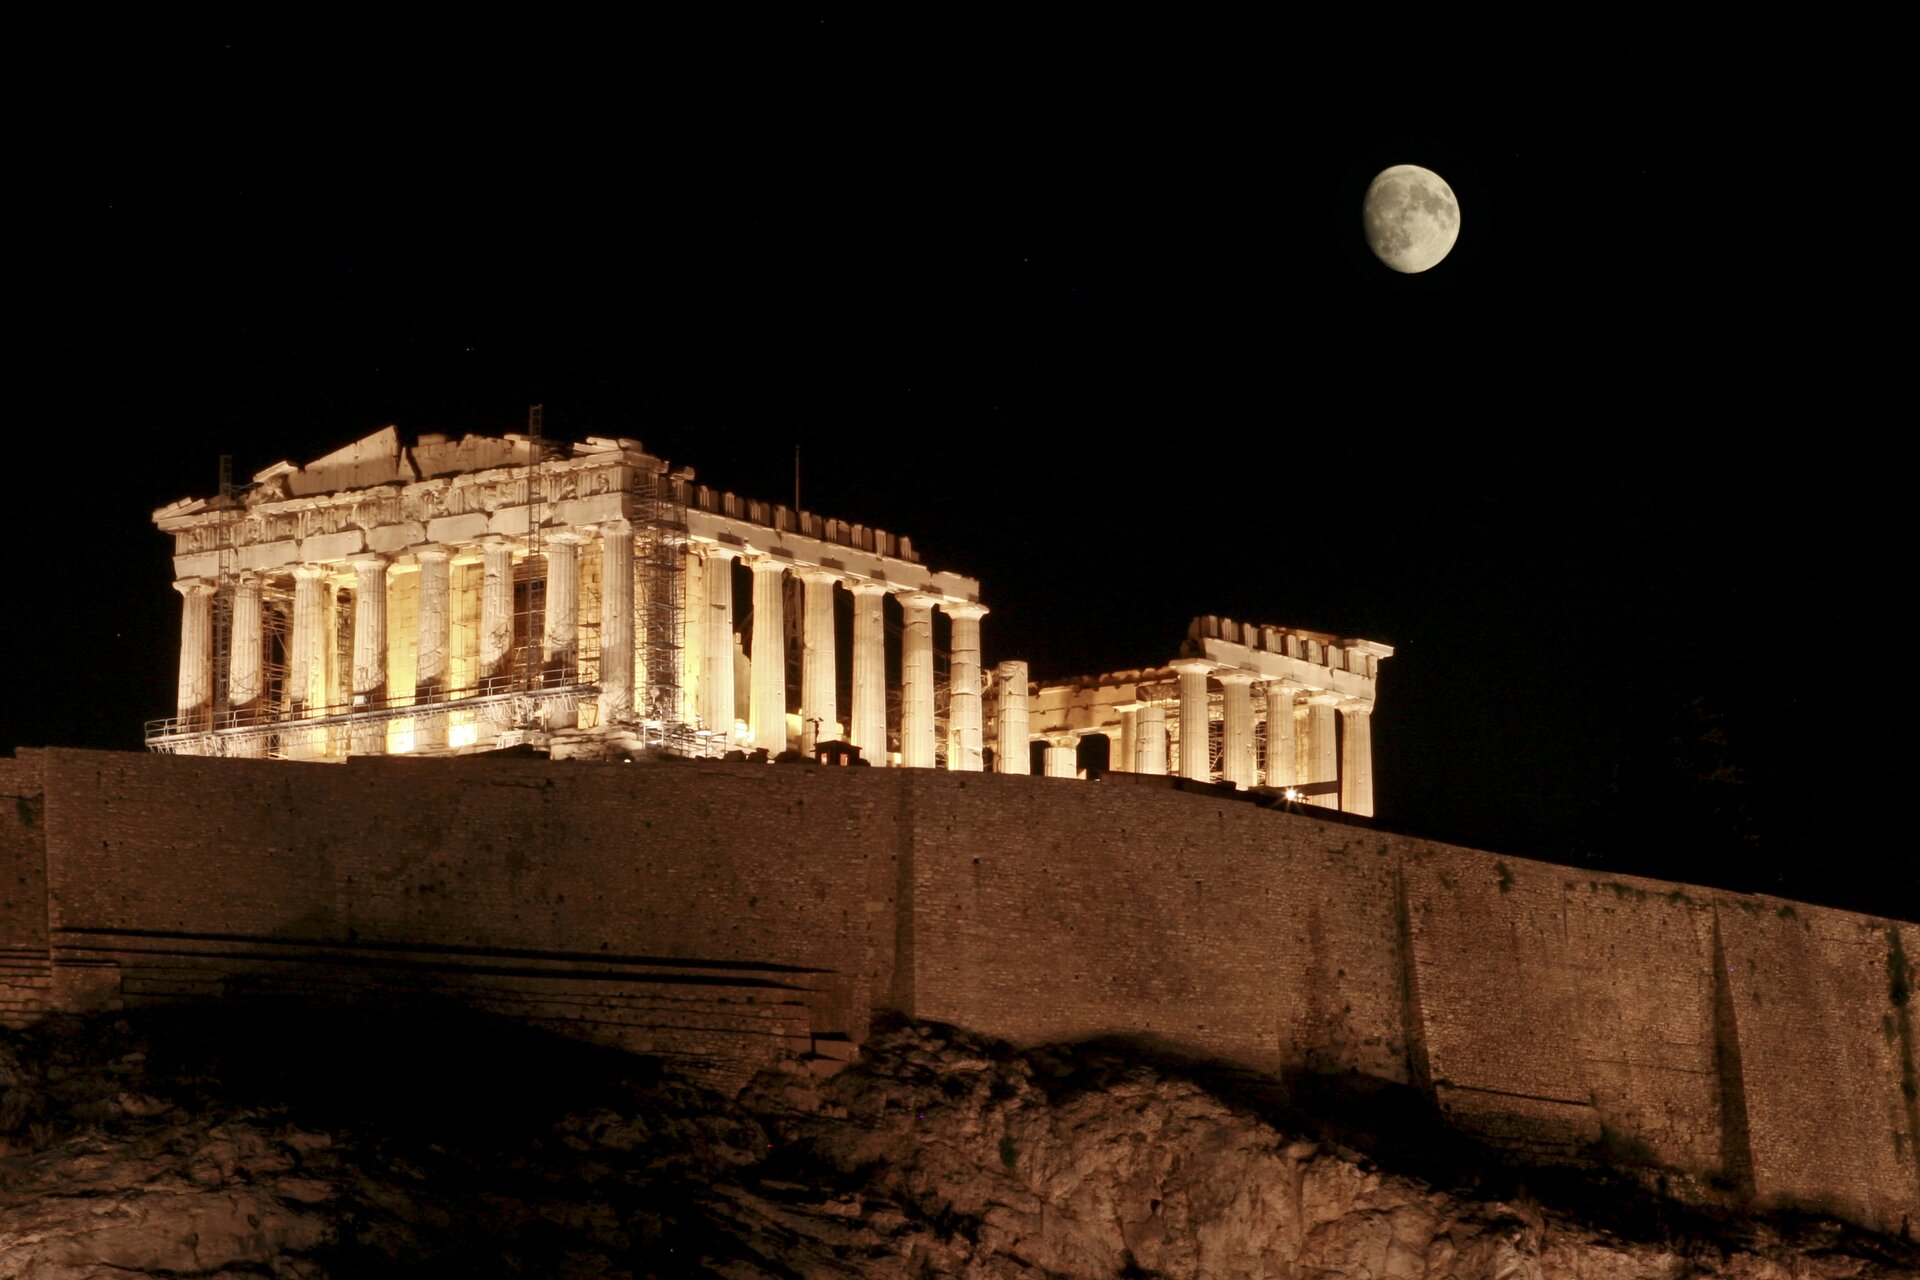 Zdjęcie przedstawia Akropol, na którym widoczny jest Partenon podświetlony światłami w nocy. Zdjęcie zostało zrobione z niższego wzniesienia. Widoczny jest Partenon na wzniesieniu. Niebo jest czarne. Po prawej stronie nad Partenonem widoczny jest prawie cały Księżyc. 